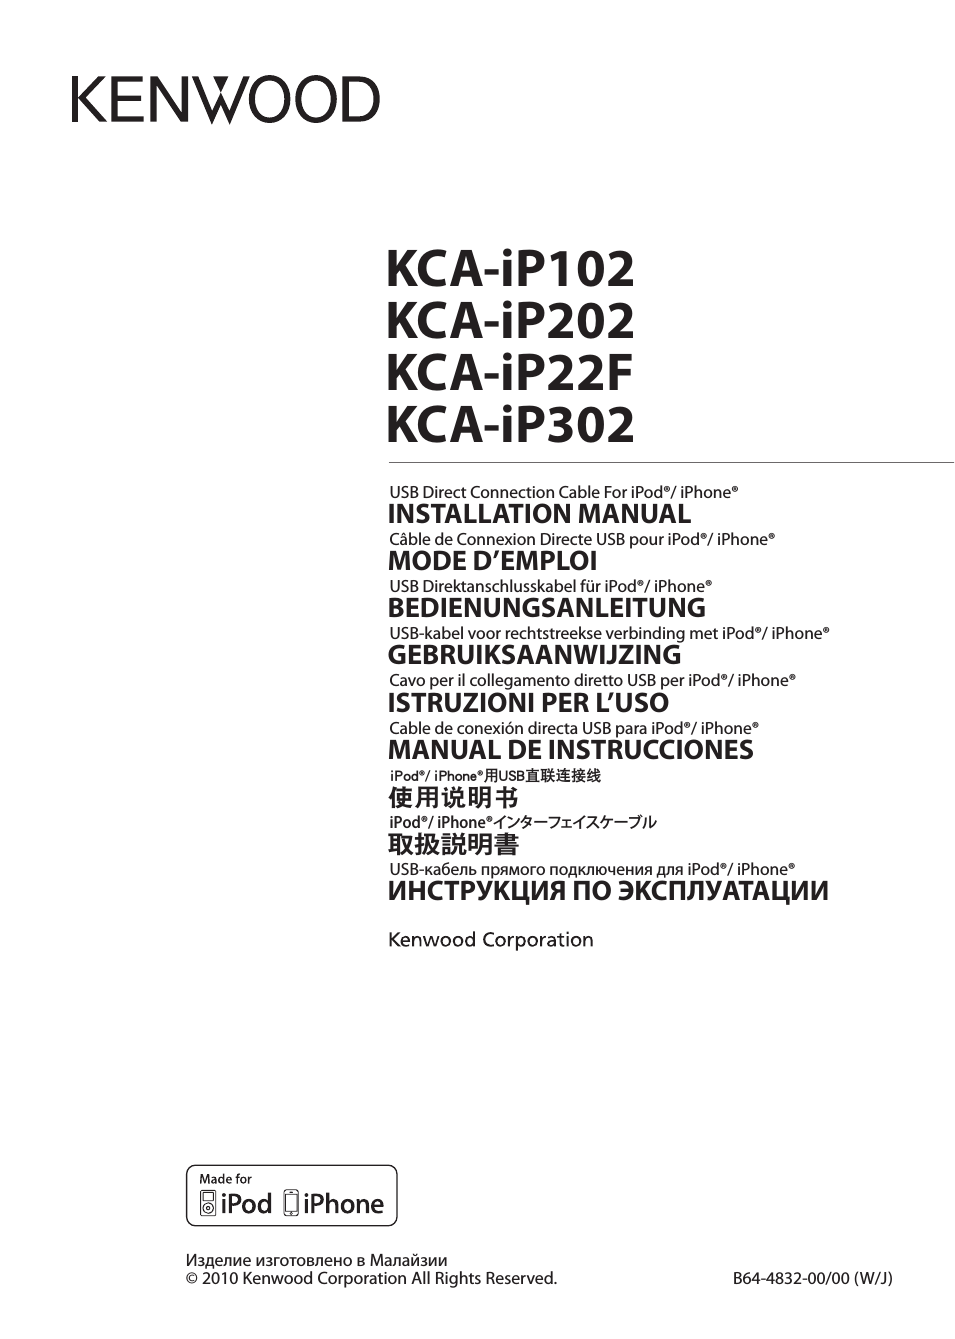 KCA-iP22F